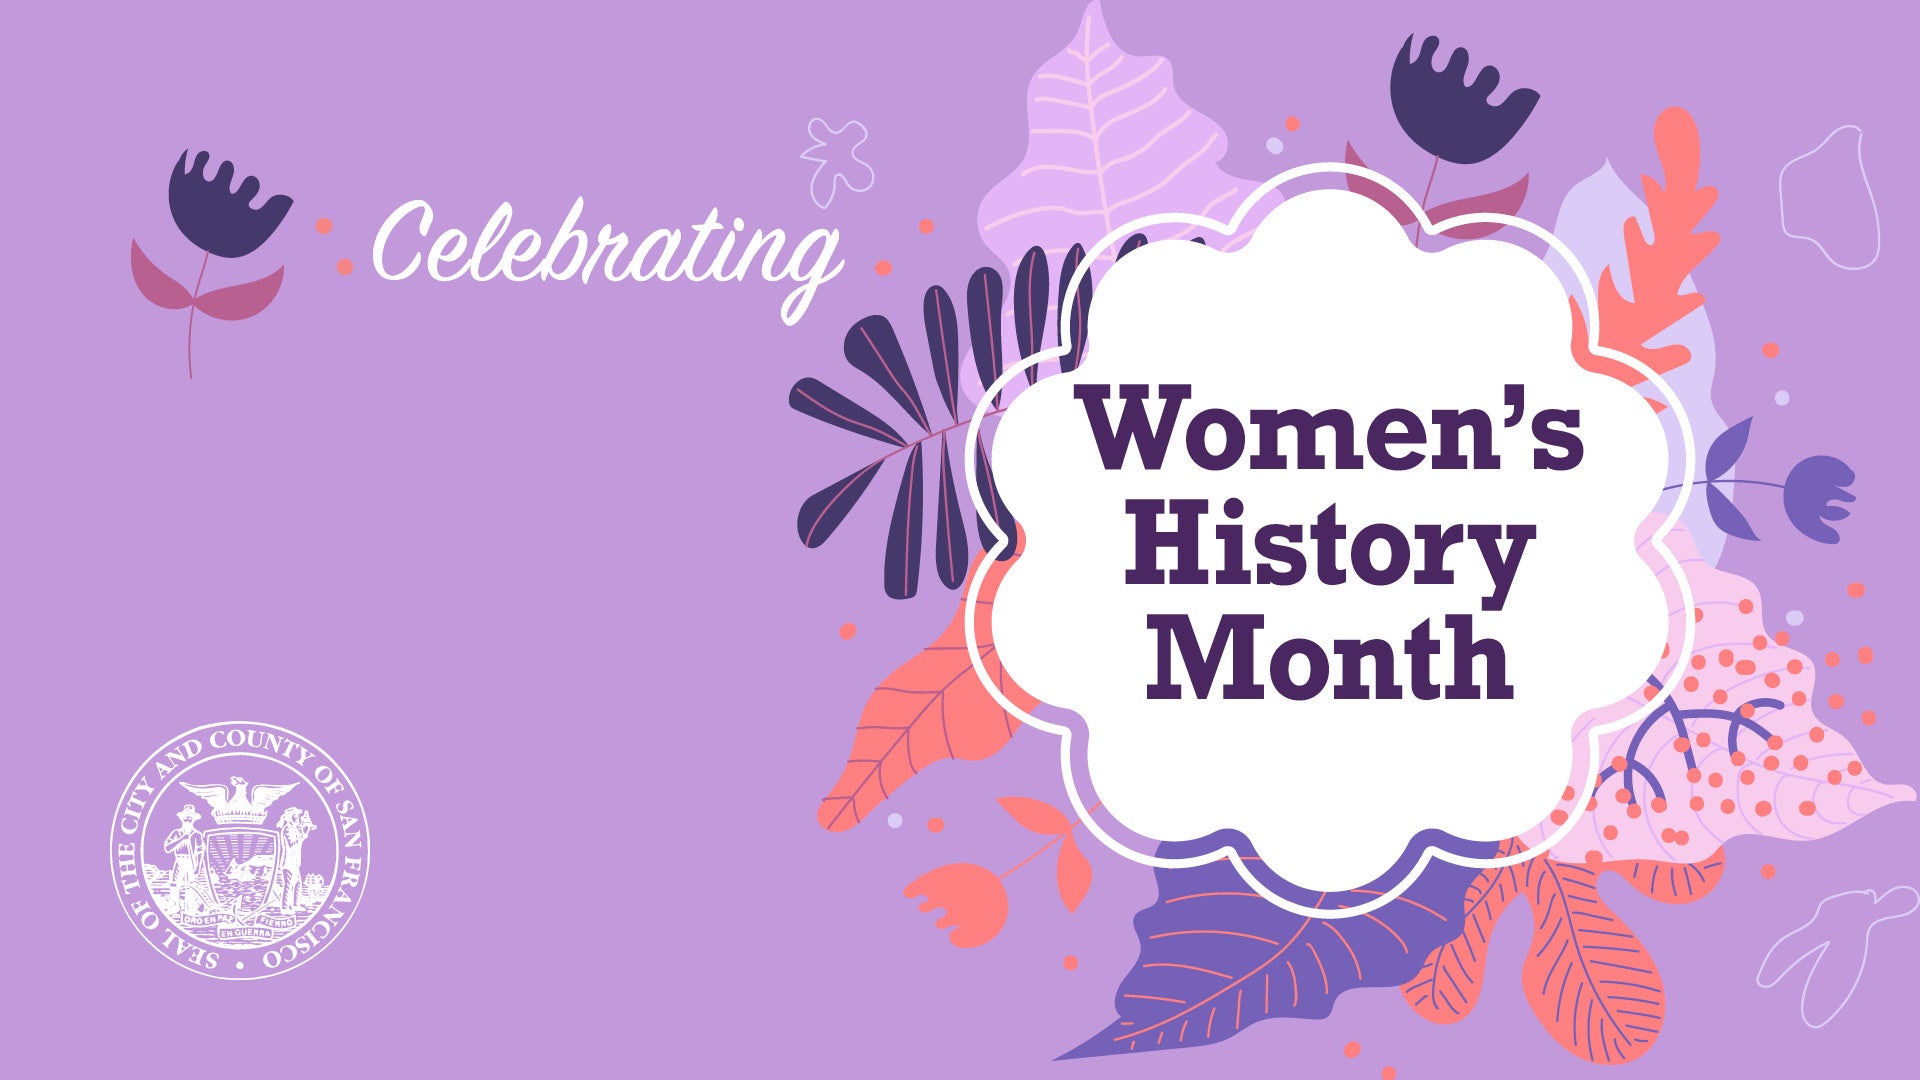 Tháng 3 này là Tháng Lịch Sử của Phụ Nữ. Một cơ hội để chúng ta tôn vinh, kỷ niệm và ghi nhớ những người phụ nữ đã trở thành nguồn cảm hứng và thay đổi cuộc sống của chúng ta. Hãy xem hình ảnh liên quan để khám phá thêm về Tháng Lịch Sử của Phụ Nữ.